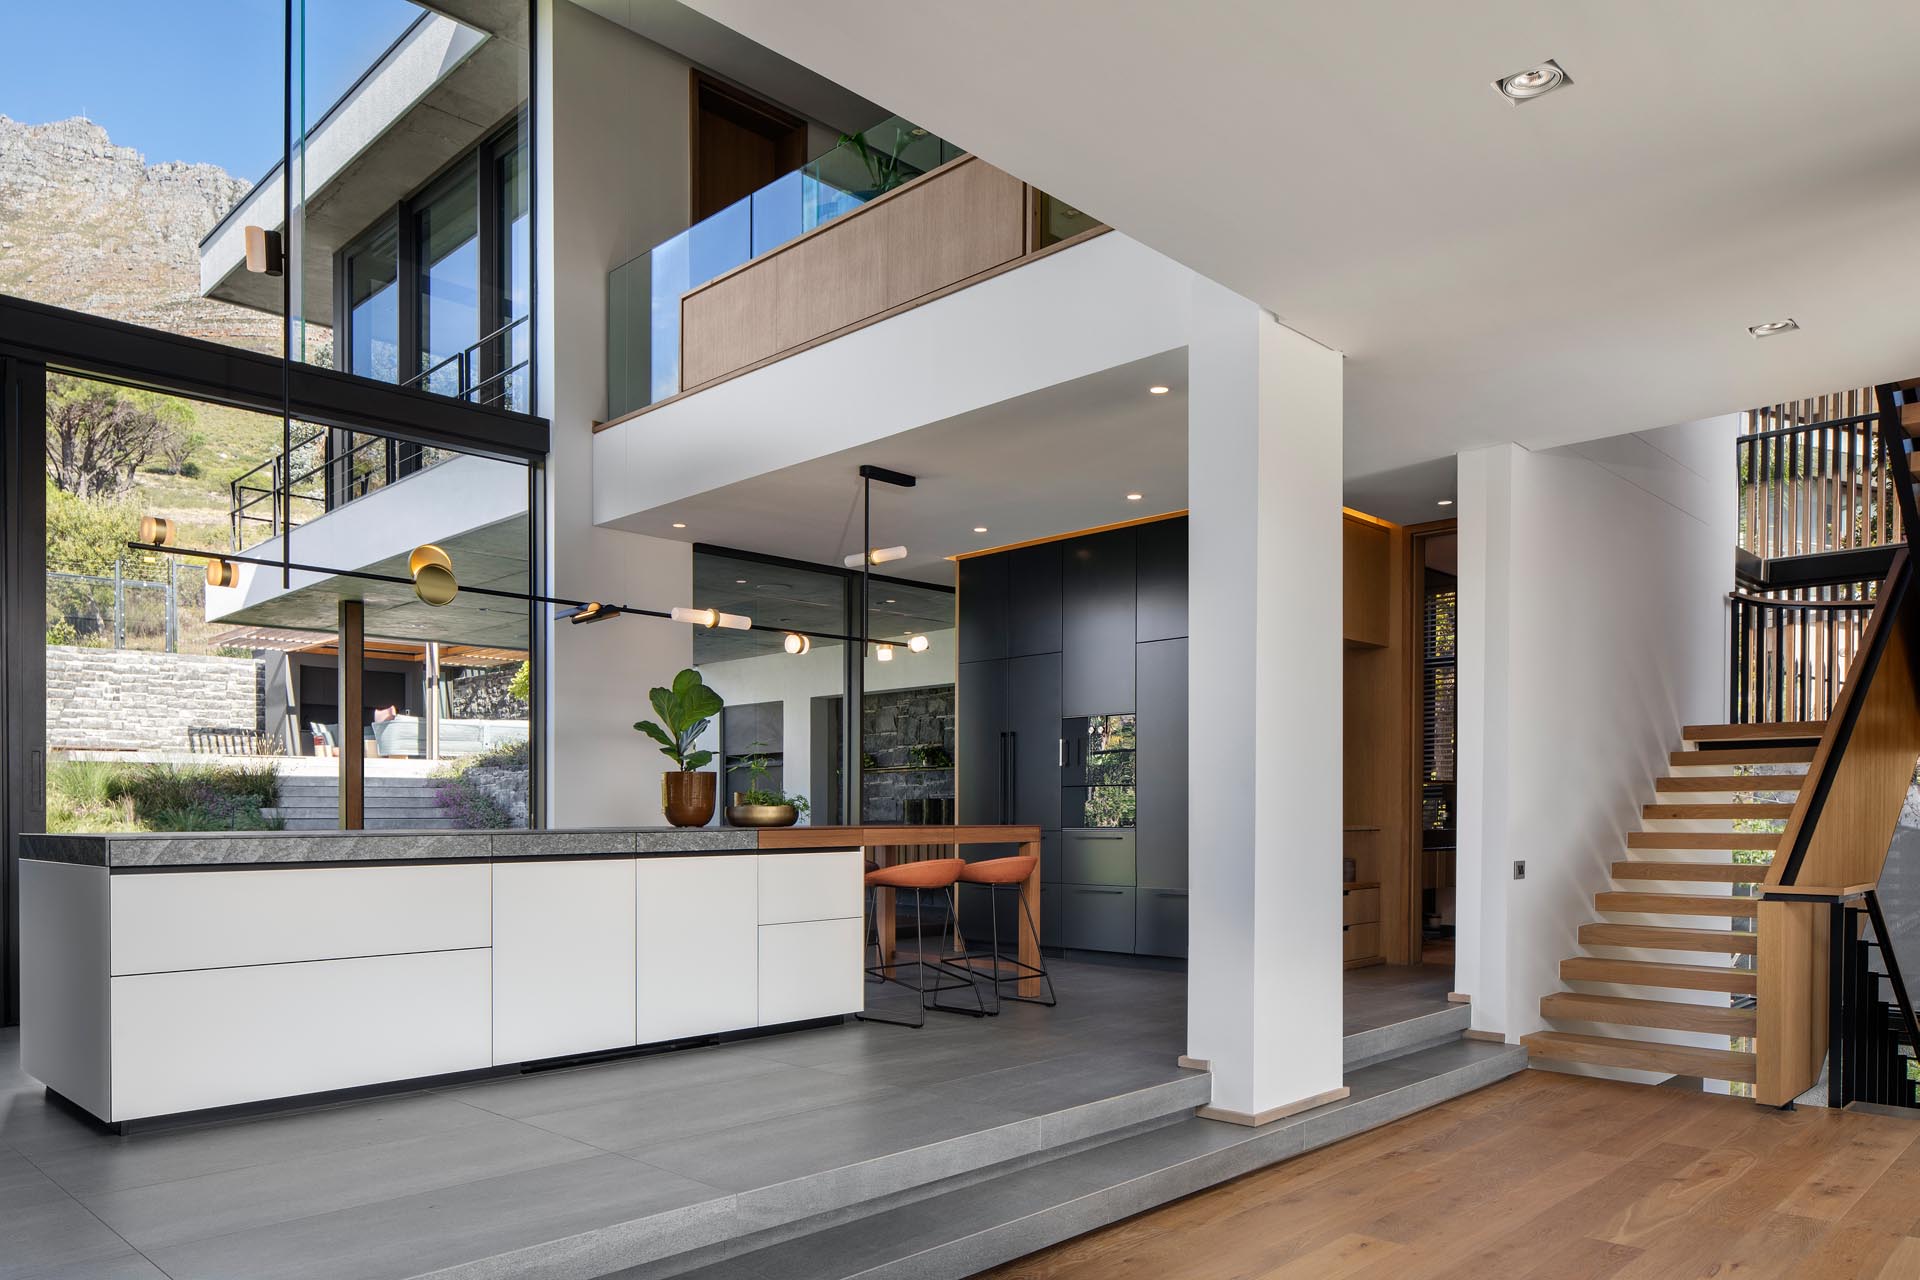 Современная кухня с минималистскими шкафами, высоким потолком и множеством окон.